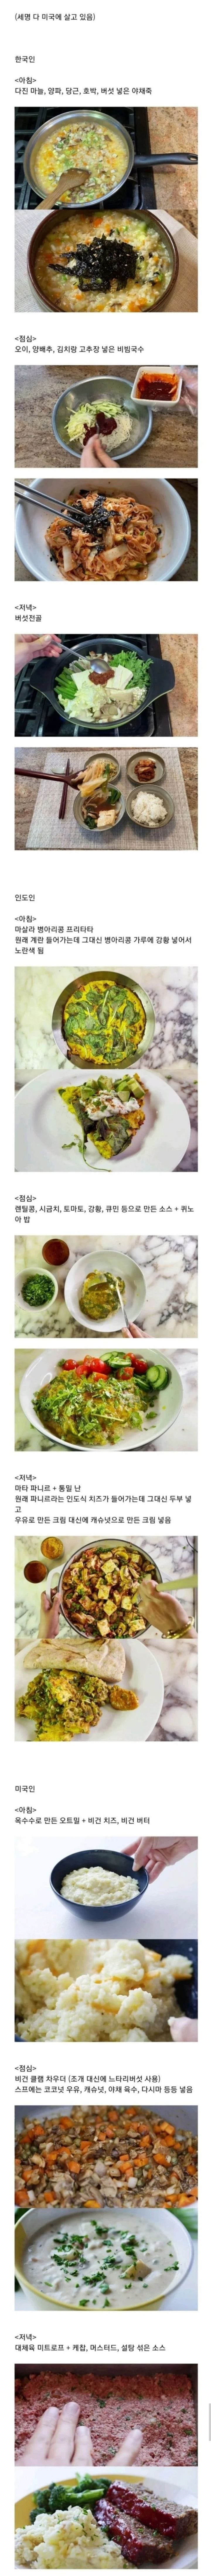 7 한국, 인도, 미국인 채식주의자의 하루 식사.jpg